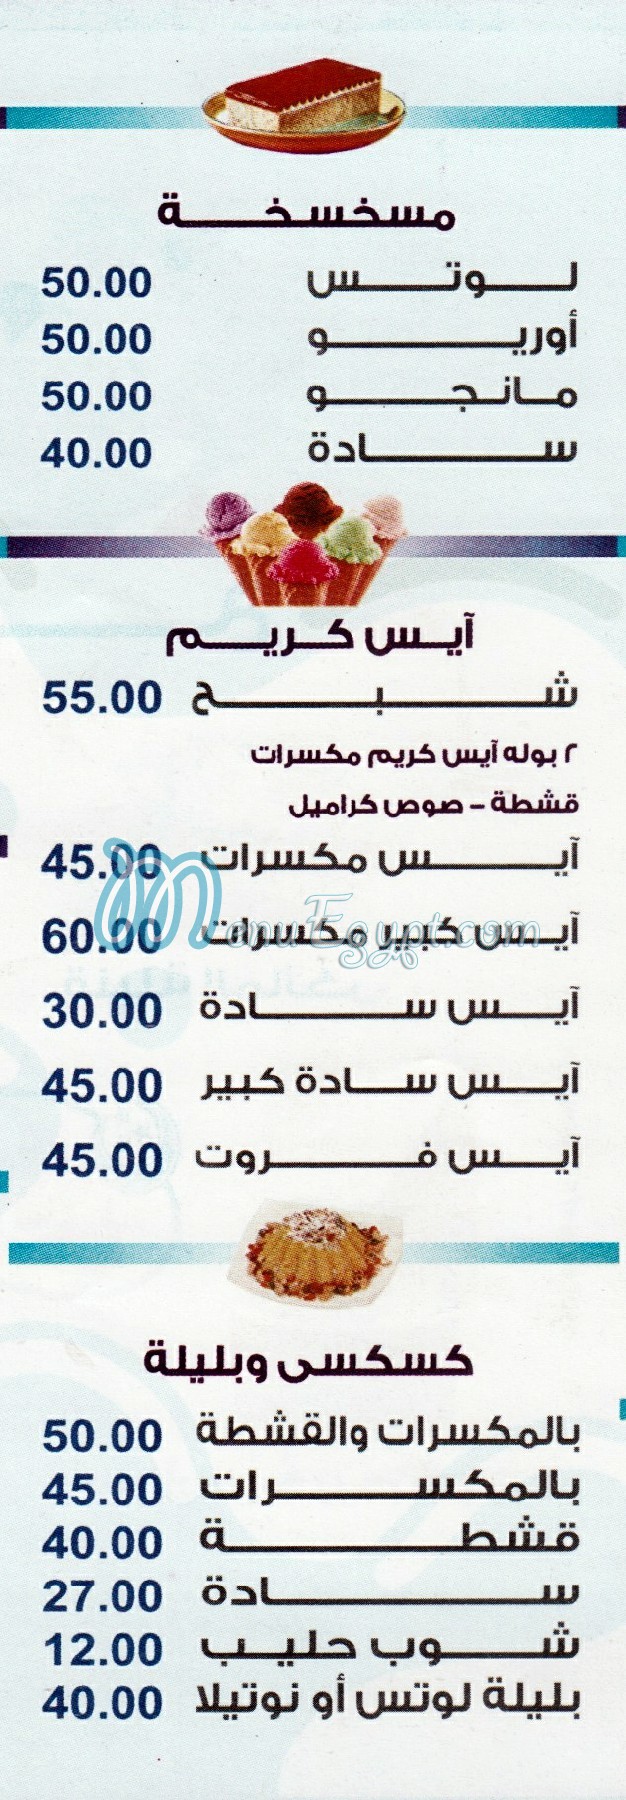 Al Malky menu Egypt